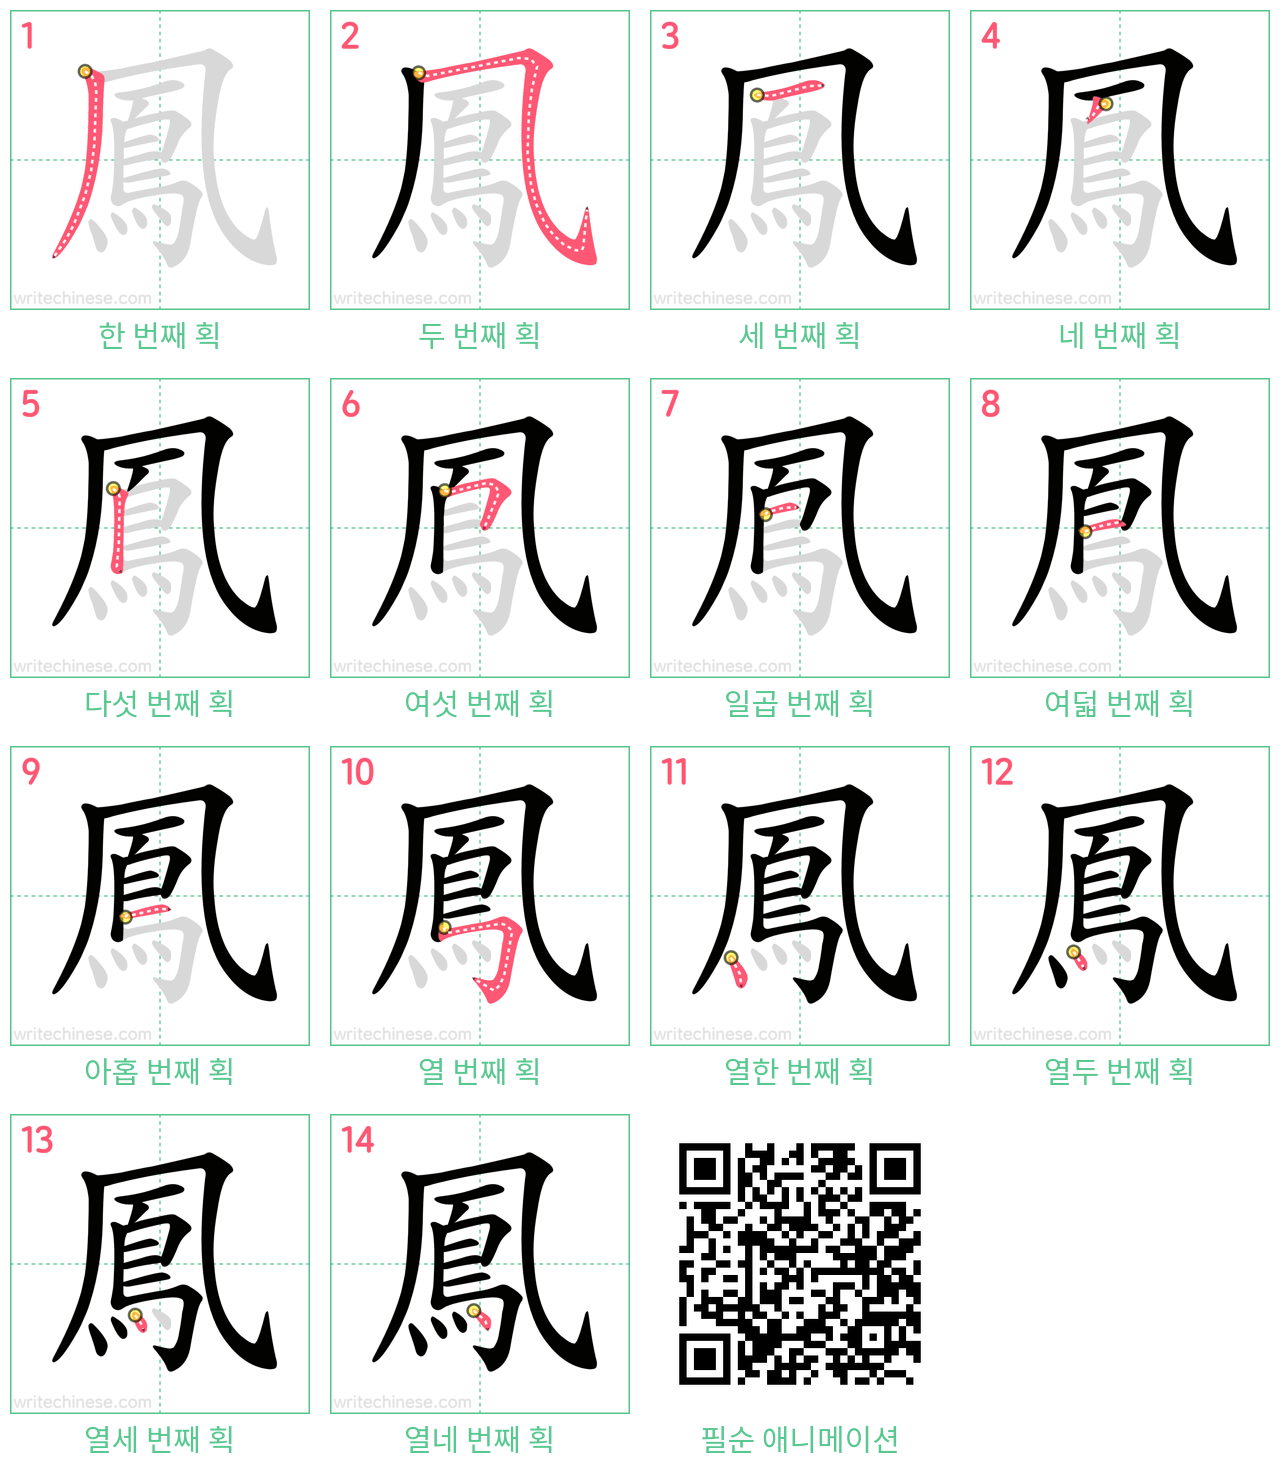 鳳 step-by-step stroke order diagrams